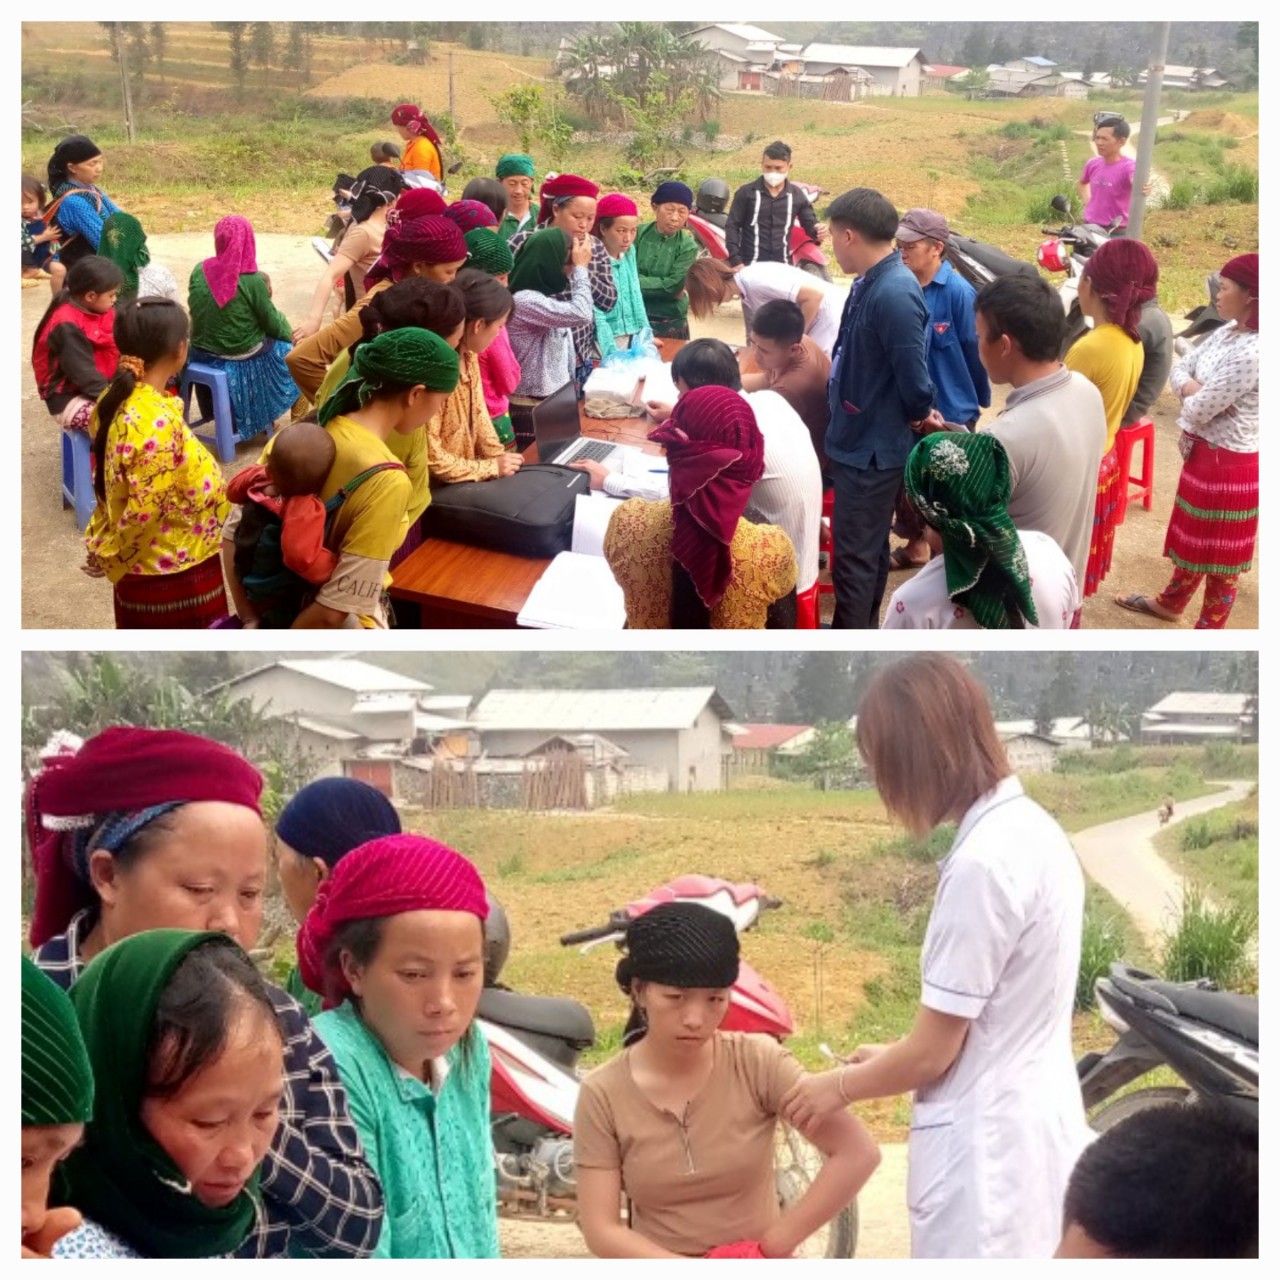 Nhân dân Thôn Mèo Vống xã Lũng Chinh  thực hiện đi tiêm phòng vacxin Bạch hầu tại nhà văn hóa thôn